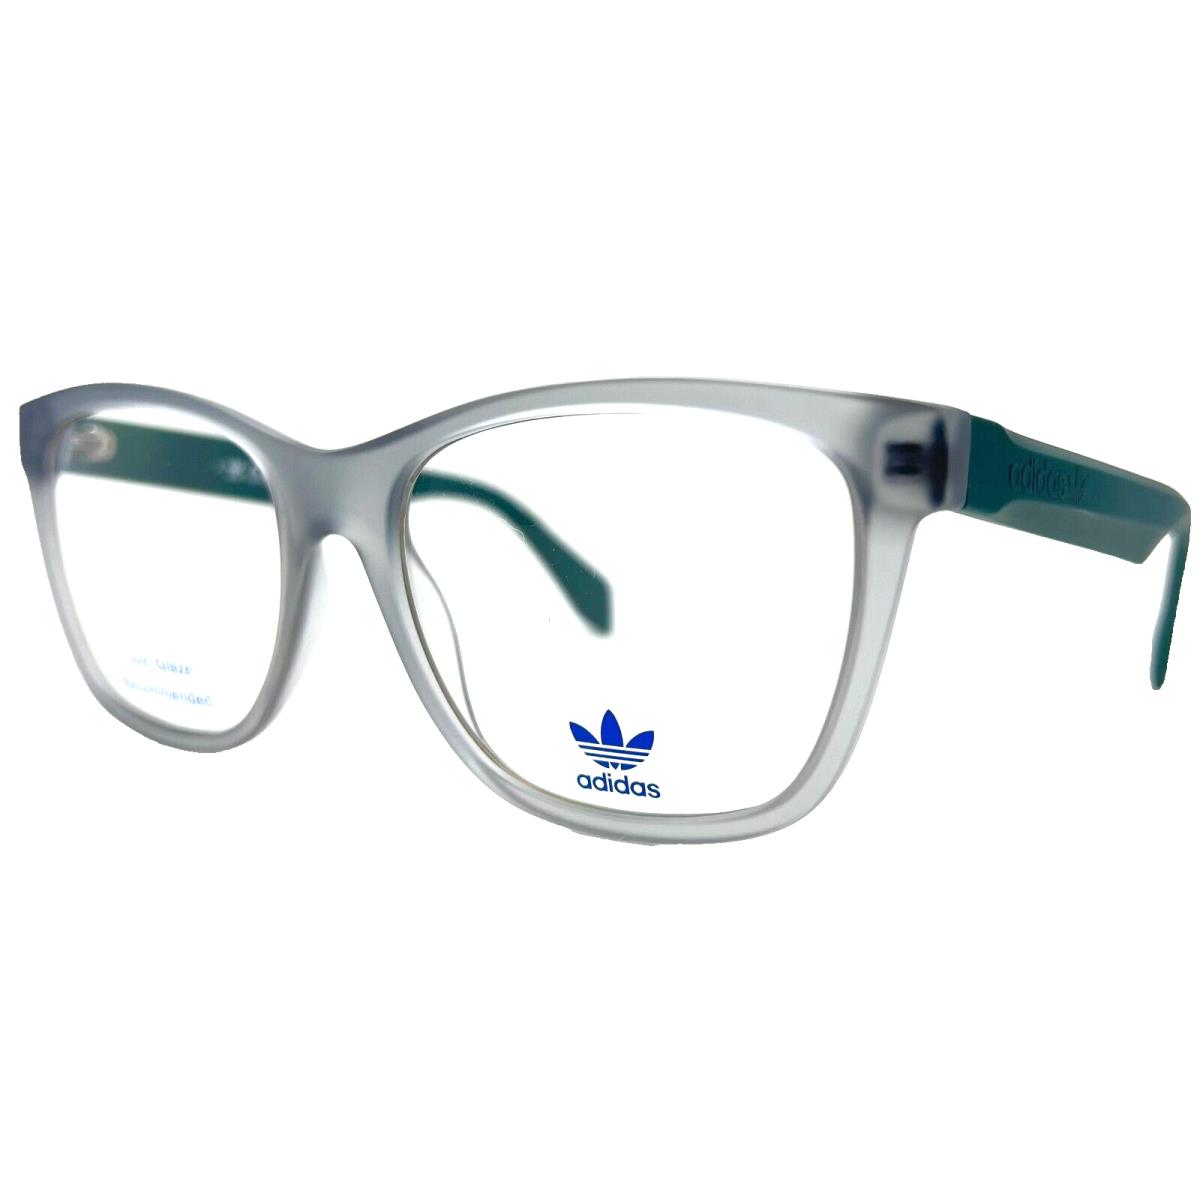 Adidas Originals - OR5025 020 54/16/145 - Gray - Eyeglasses Case